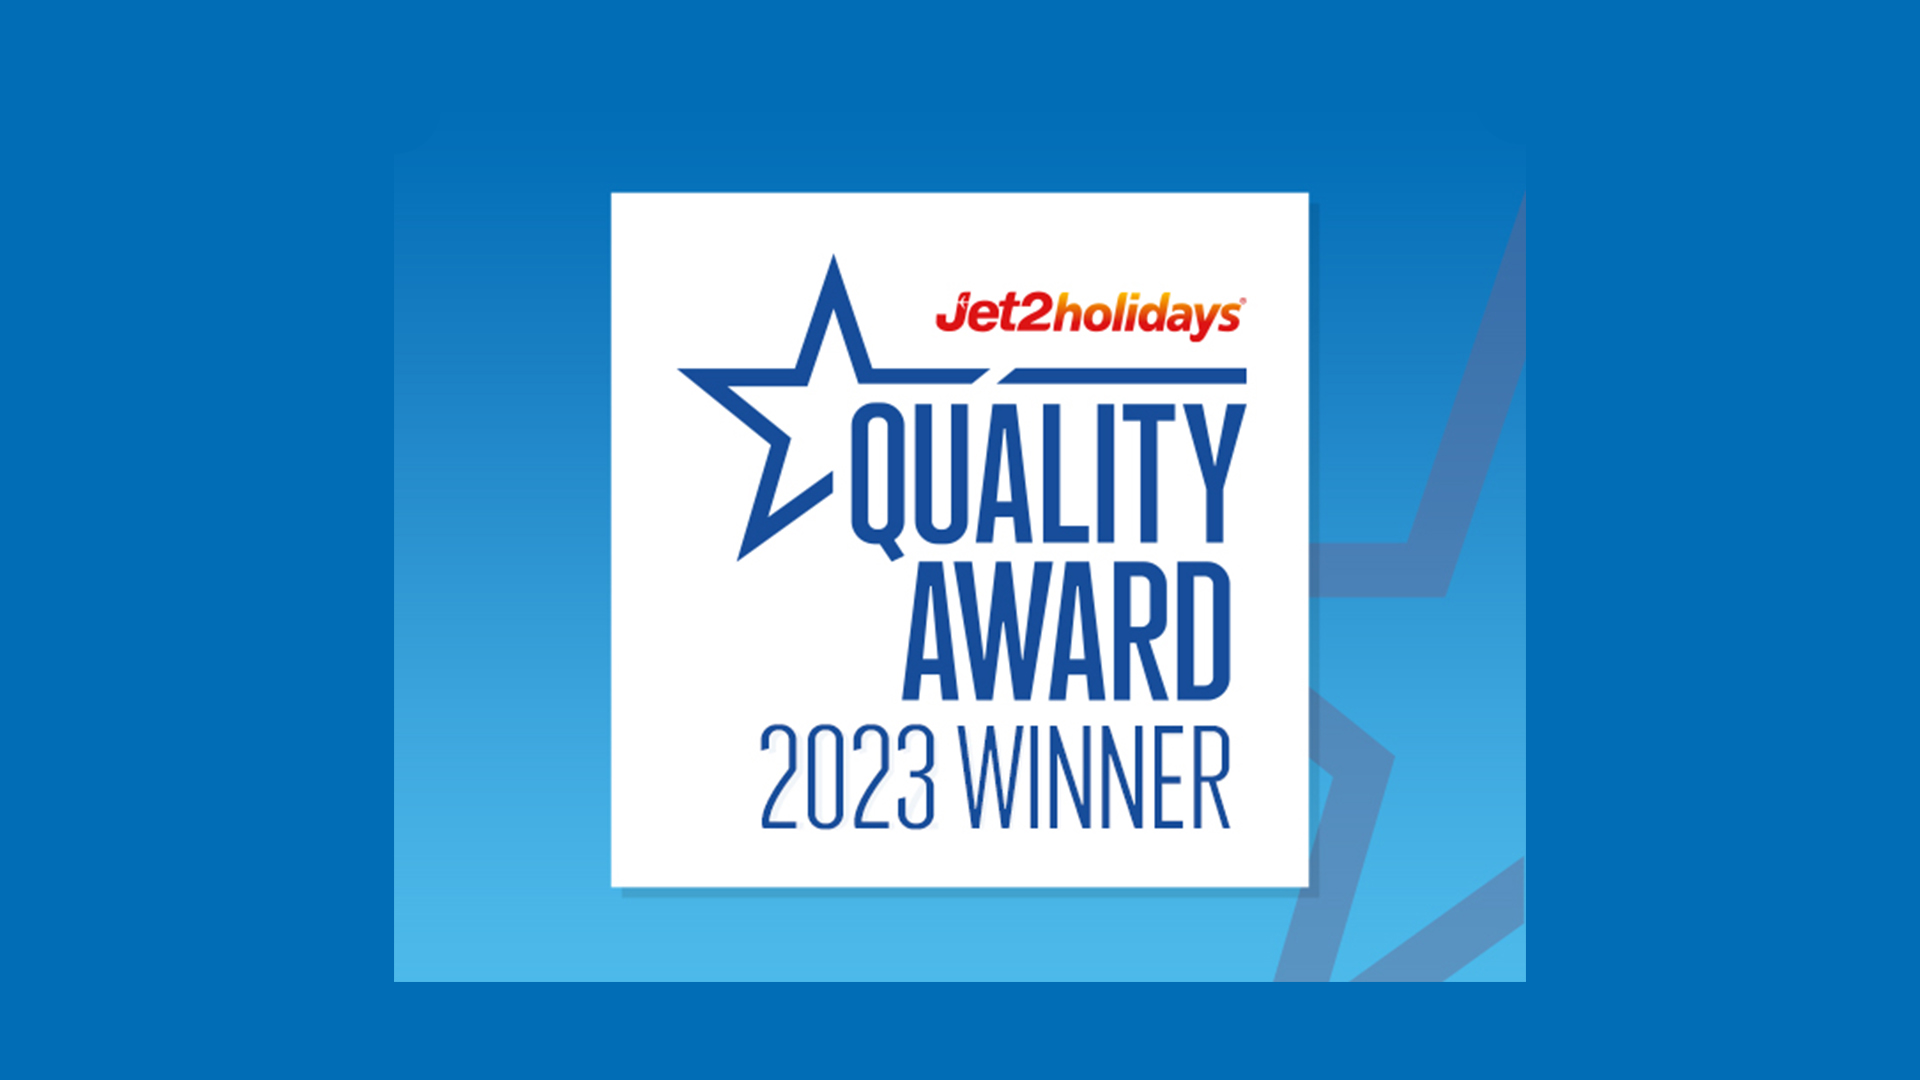 Jet2holidays ‘Üstün Hizmet Kalitesi’ ödülünün 2023 yılı kazananı   Ela Excellence Resort Belek oldu.